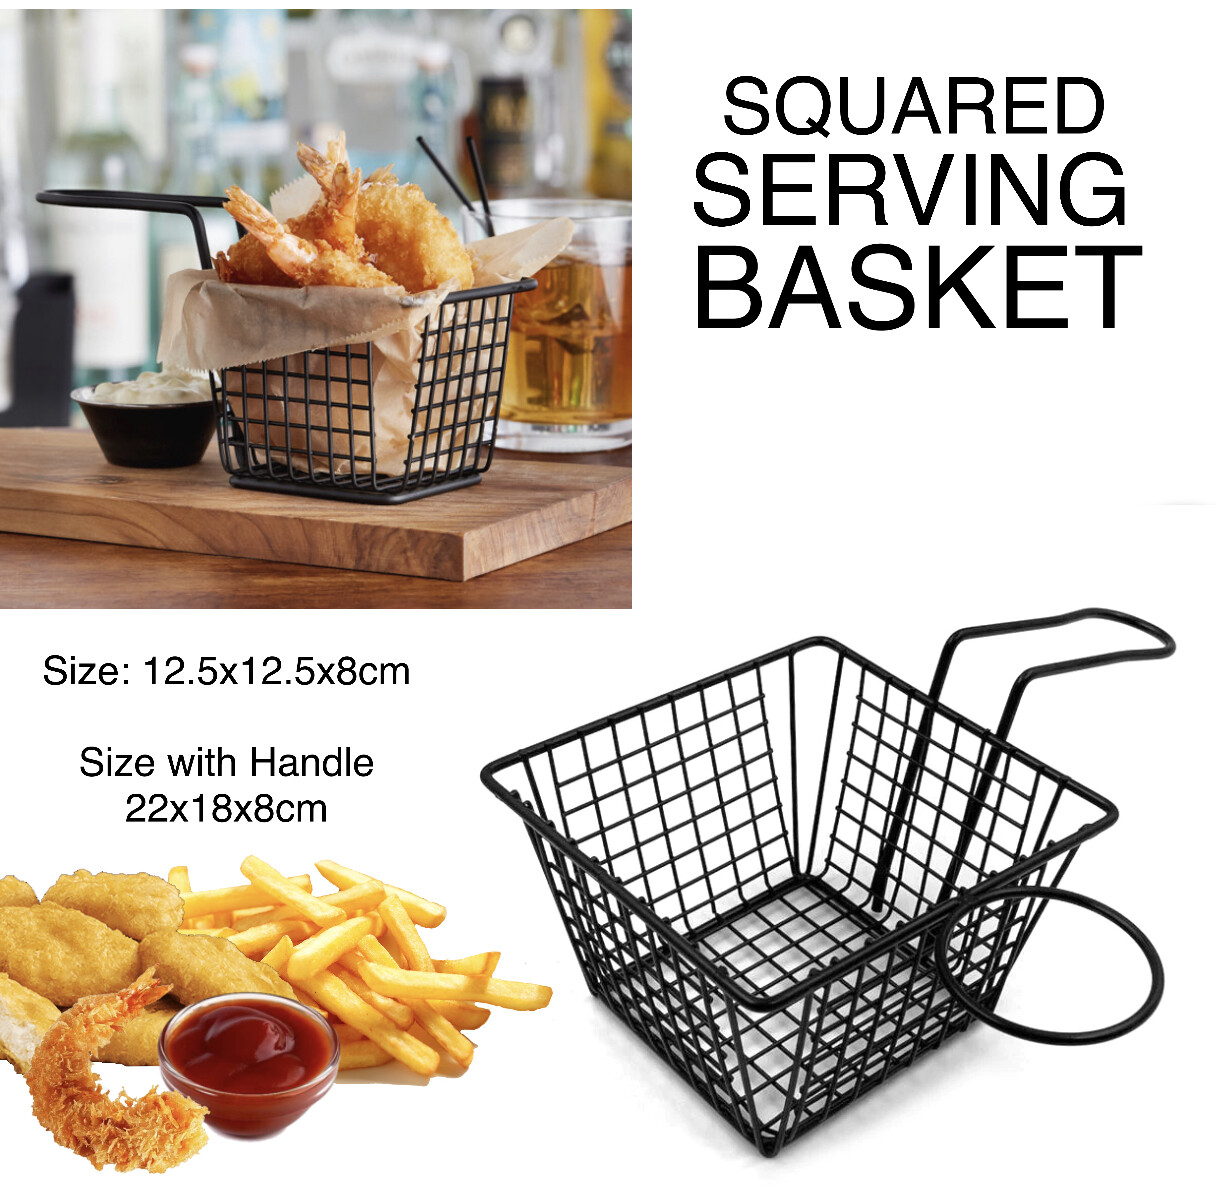 Squared Serving Basket